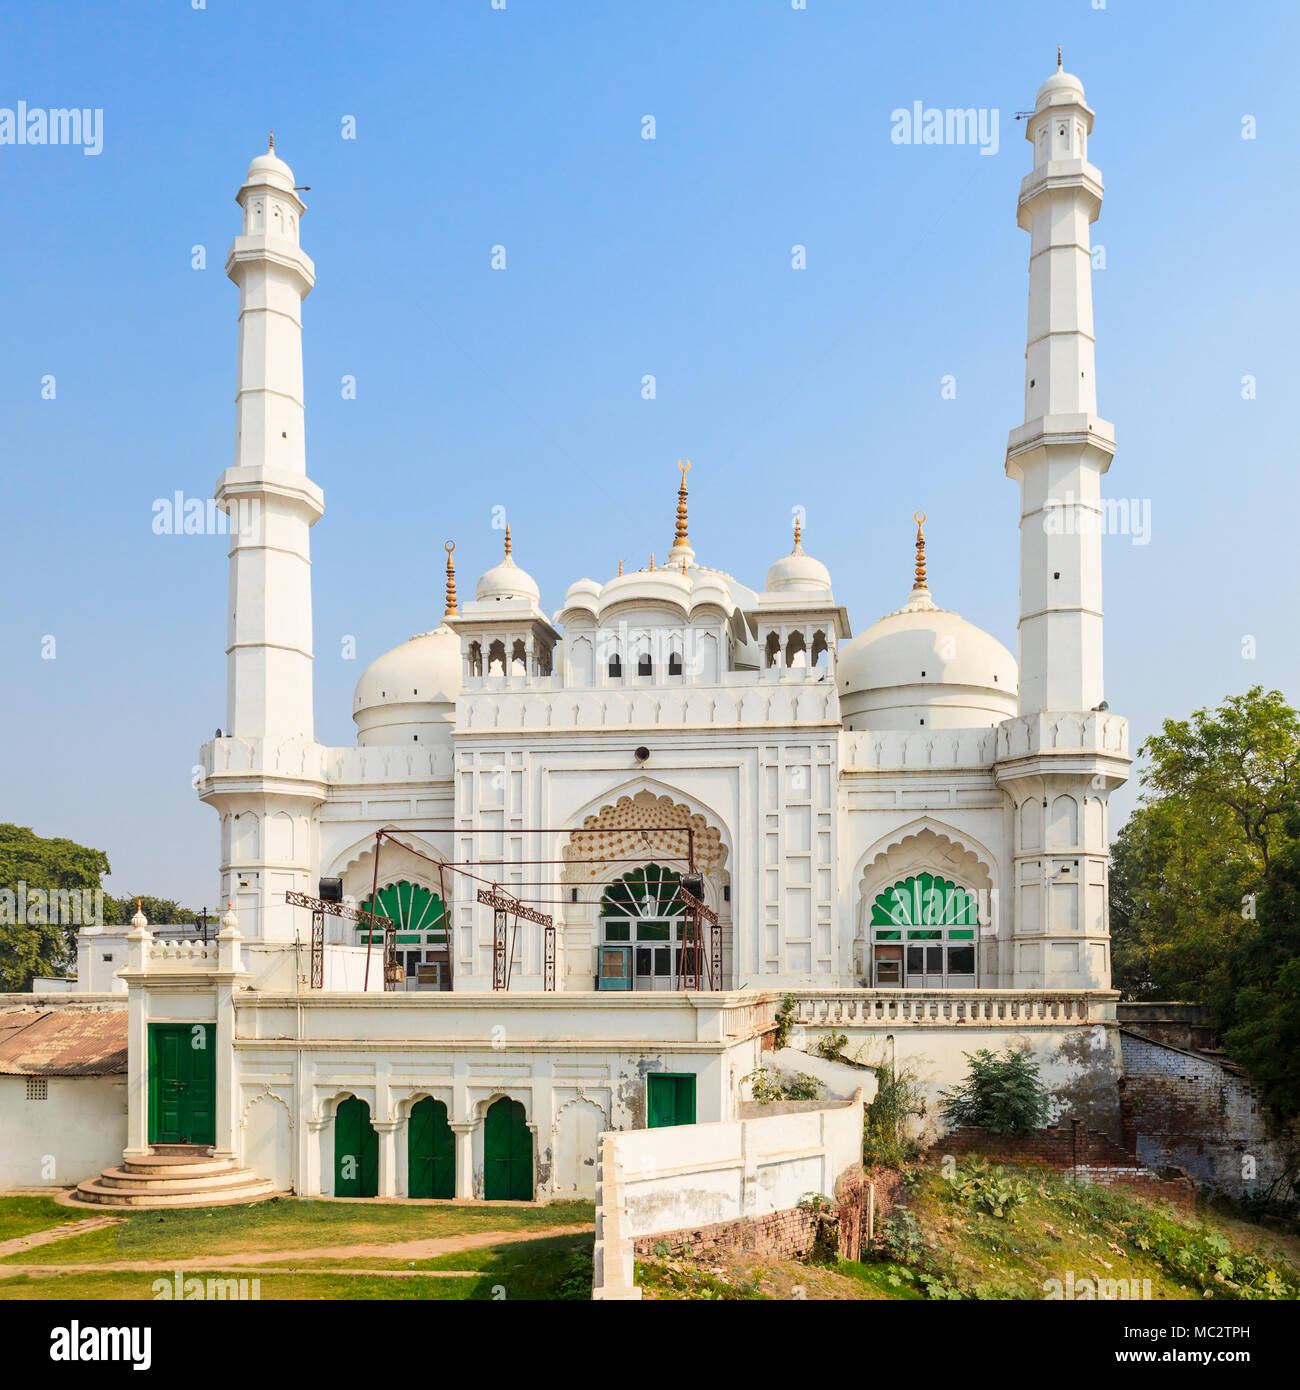 Tila Wali Masjid est une mosquée située près de l'Imambara Bara dans la ville de Lucknow Inde Banque D'Images